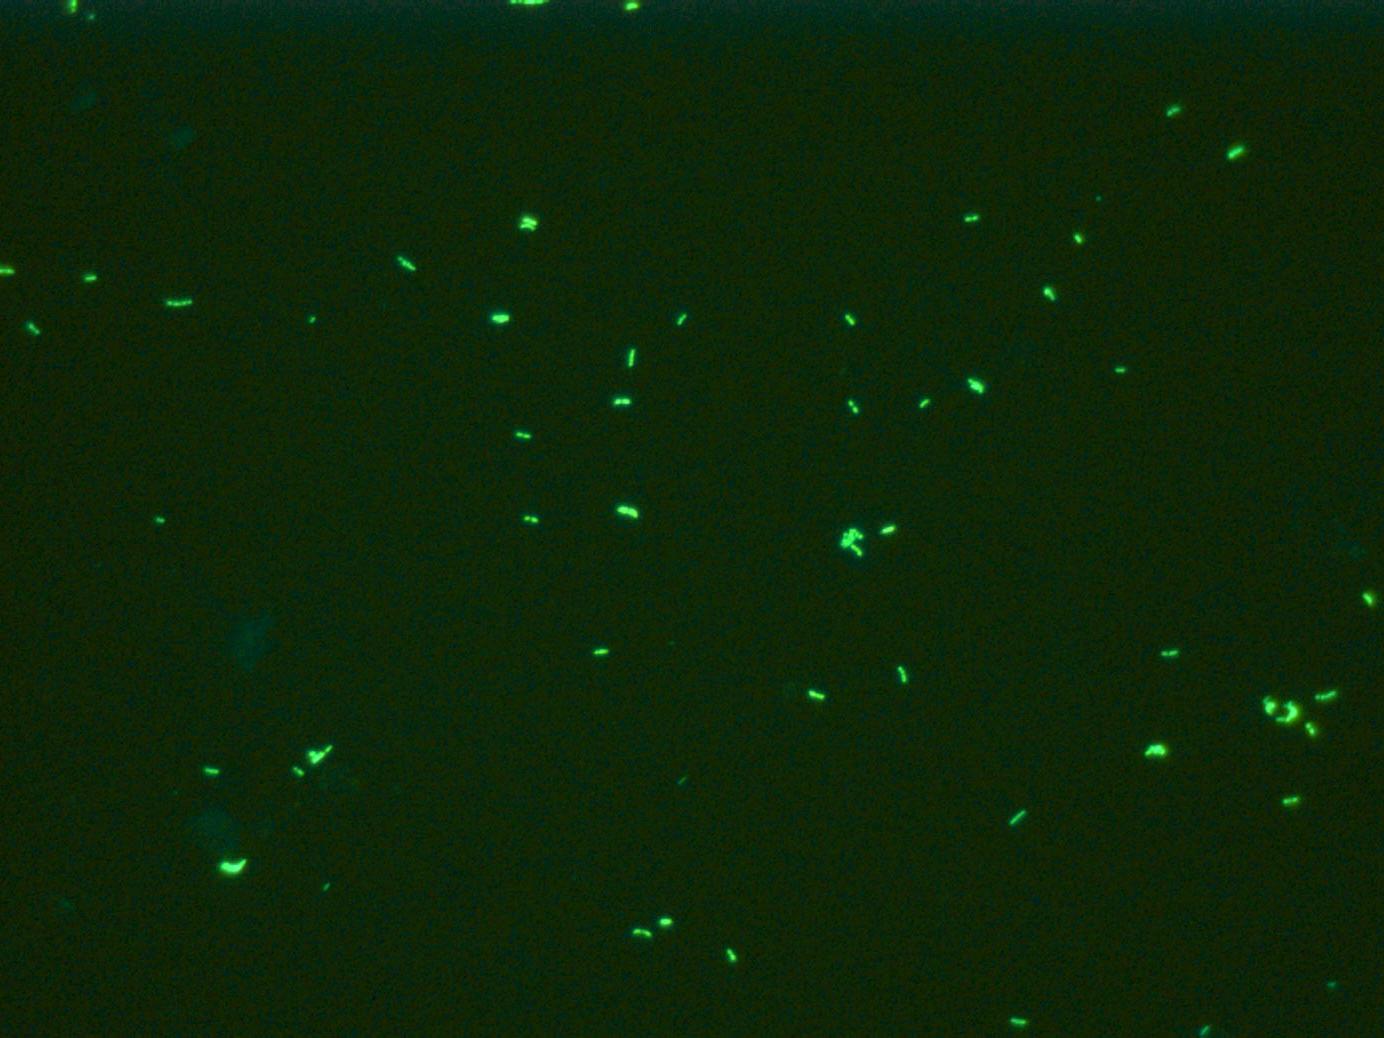 Mycobacterium tuberculosis mit Auramin-Färbung, Gegenfärbung mit Methylenblau, Fluoreszenz-Imaging, aufgenommen mit ZEISS Primostar iLED.